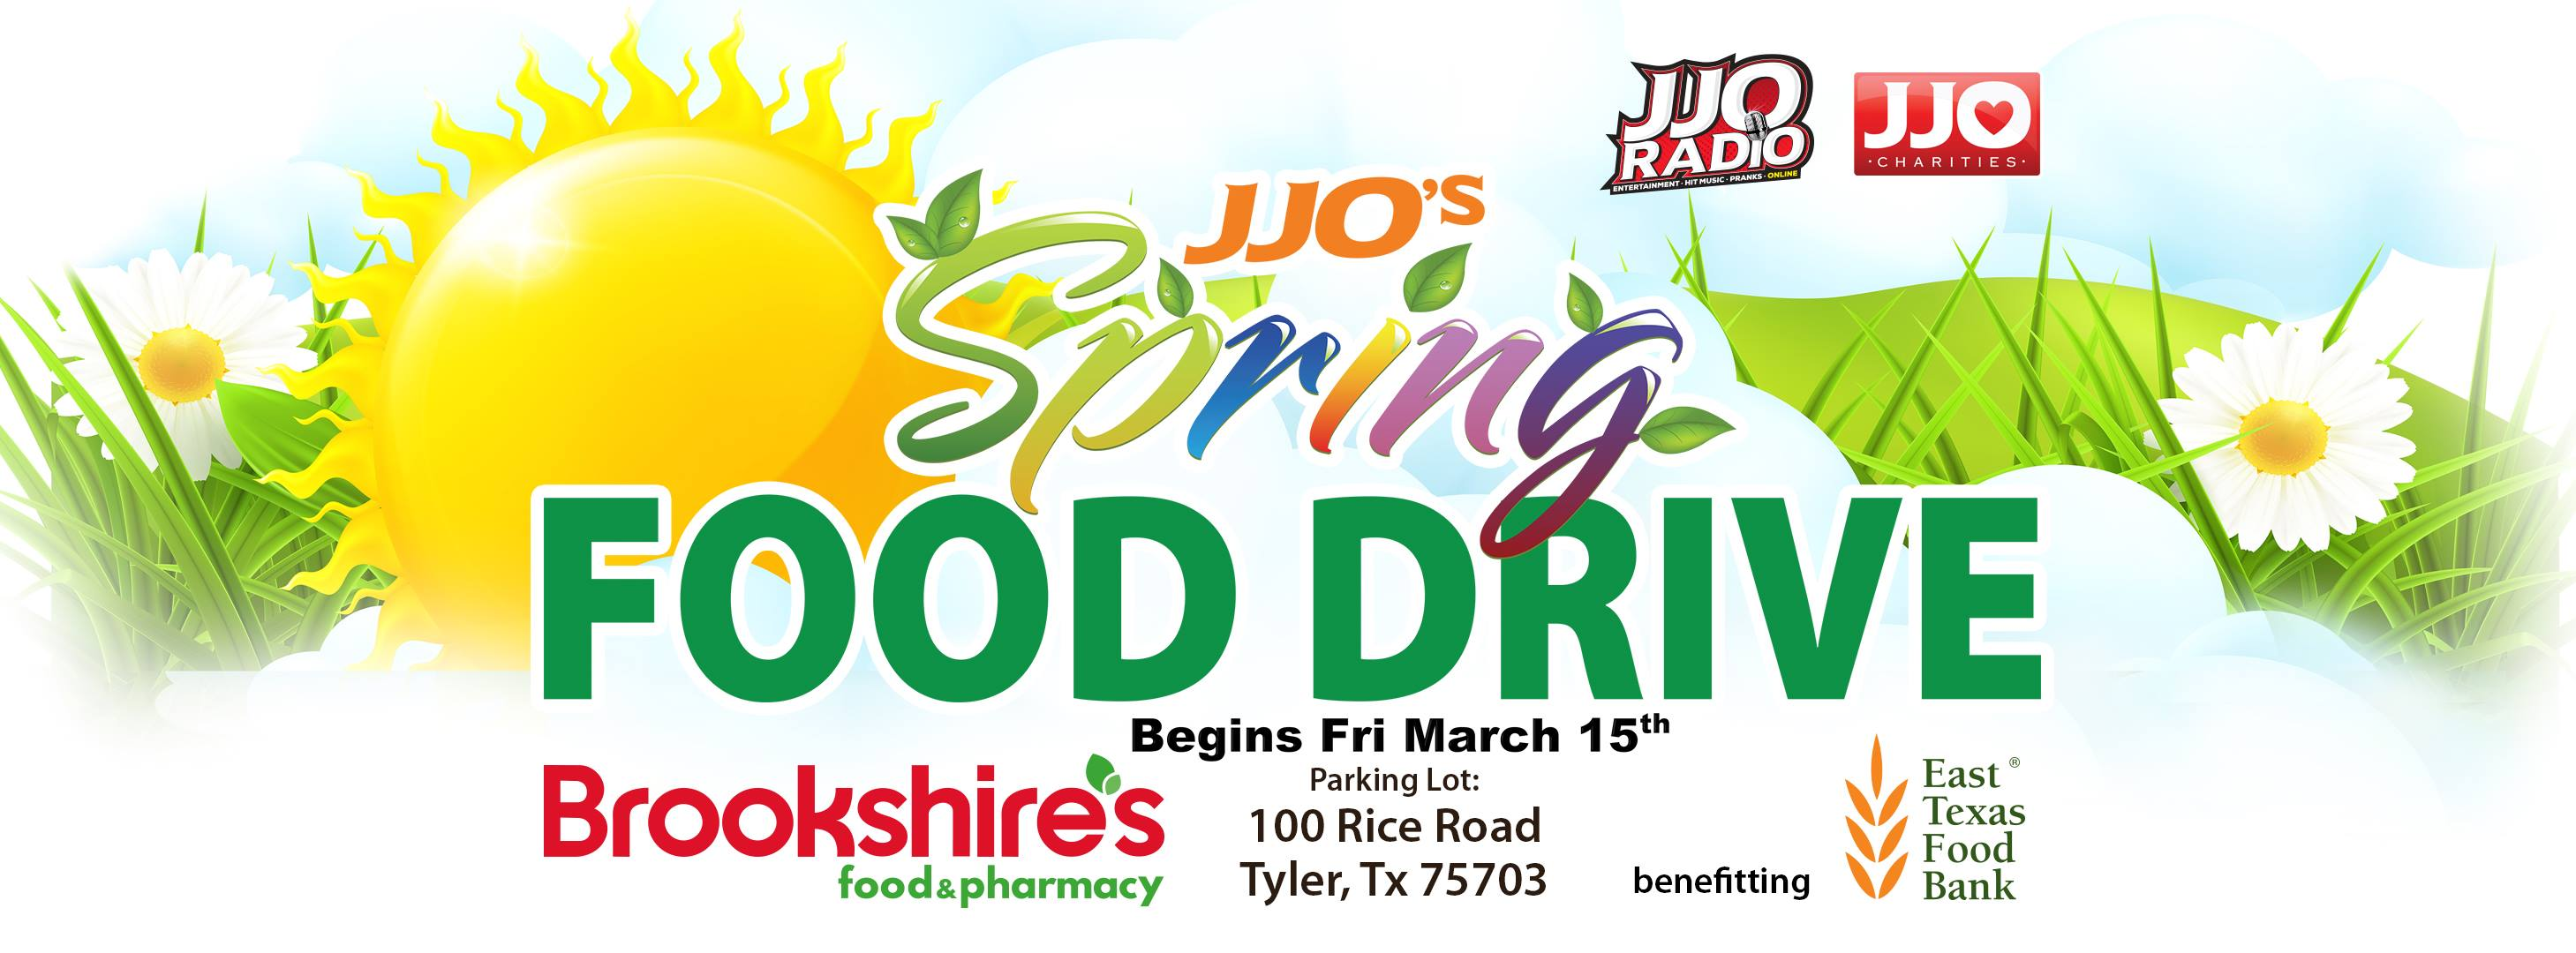 JJO Spring Food Drive Promo (Image)